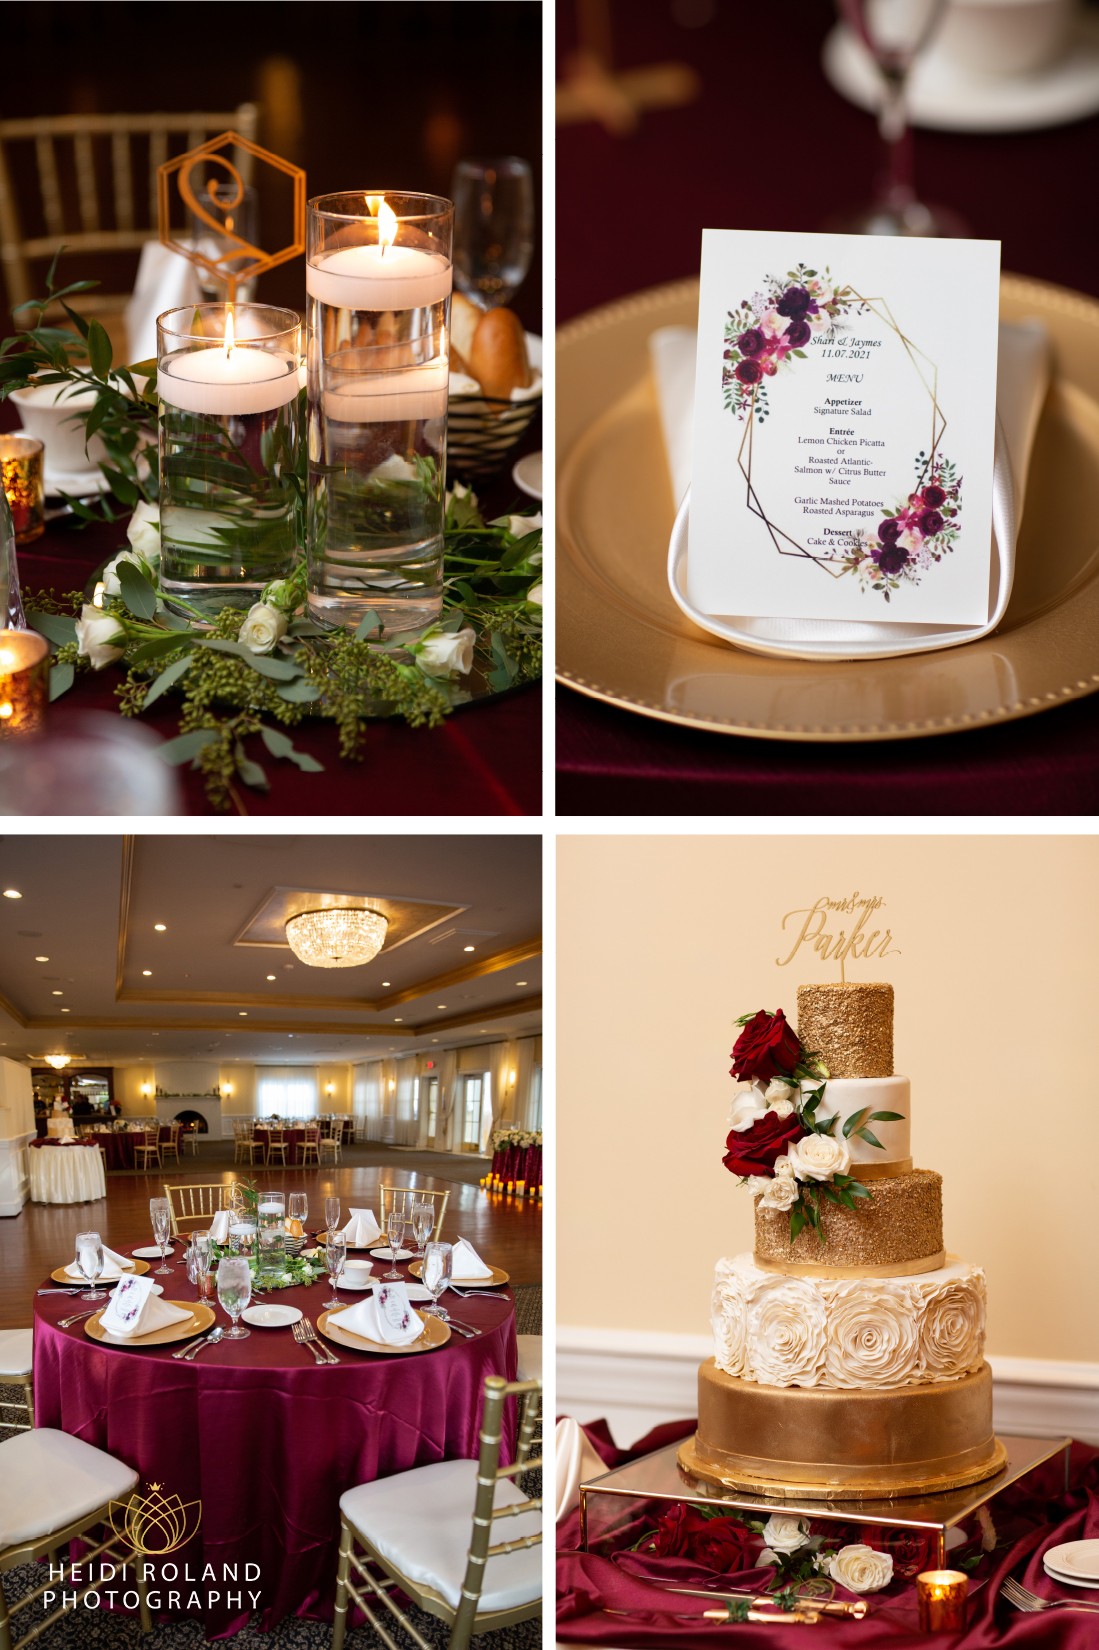 Penn Oaks Golf Club Wedding reception menu and gold cake